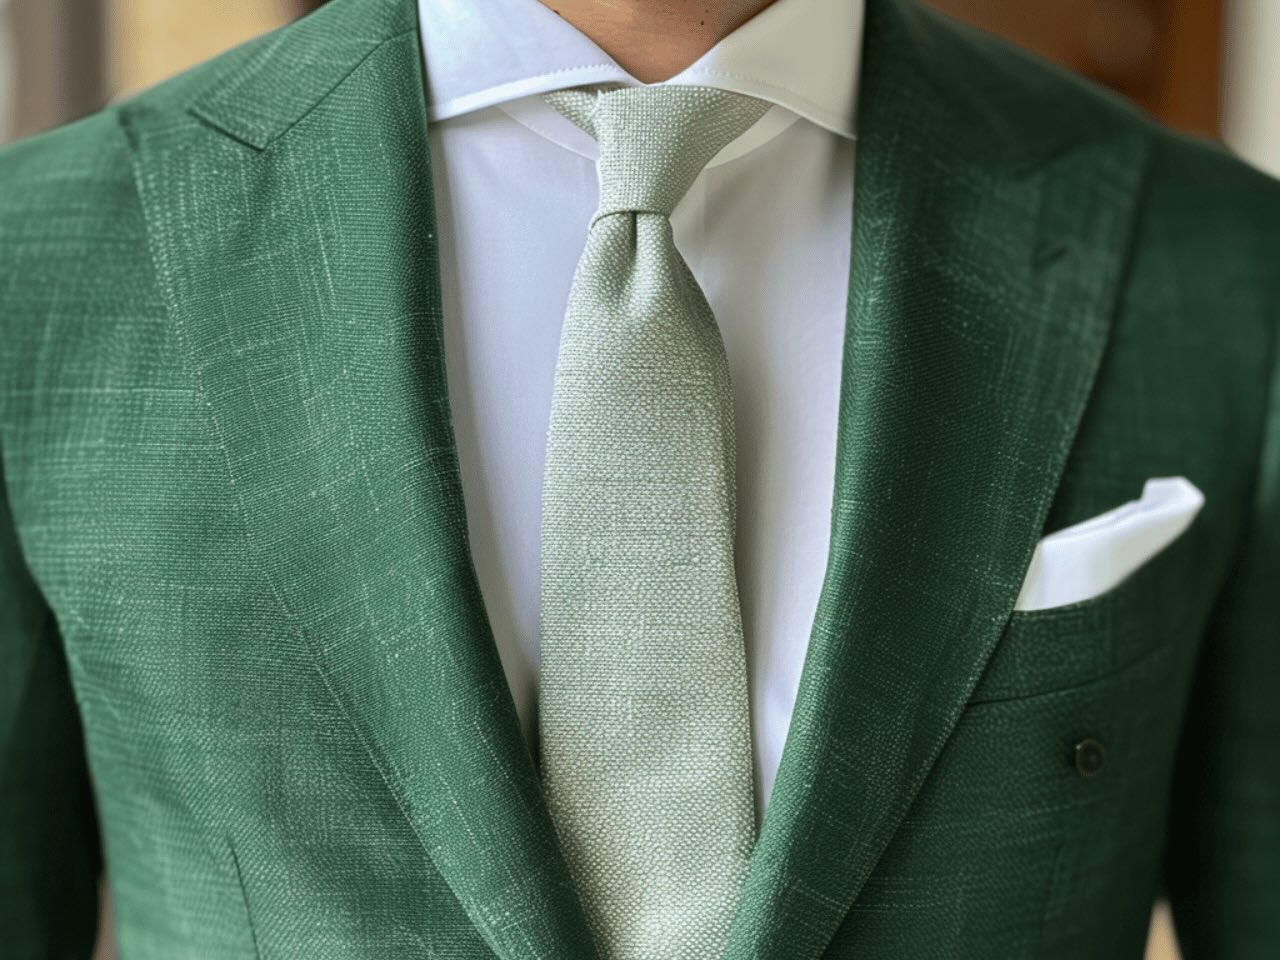 Hochzeitsanzug in grün mit hellgrüner Krawatte